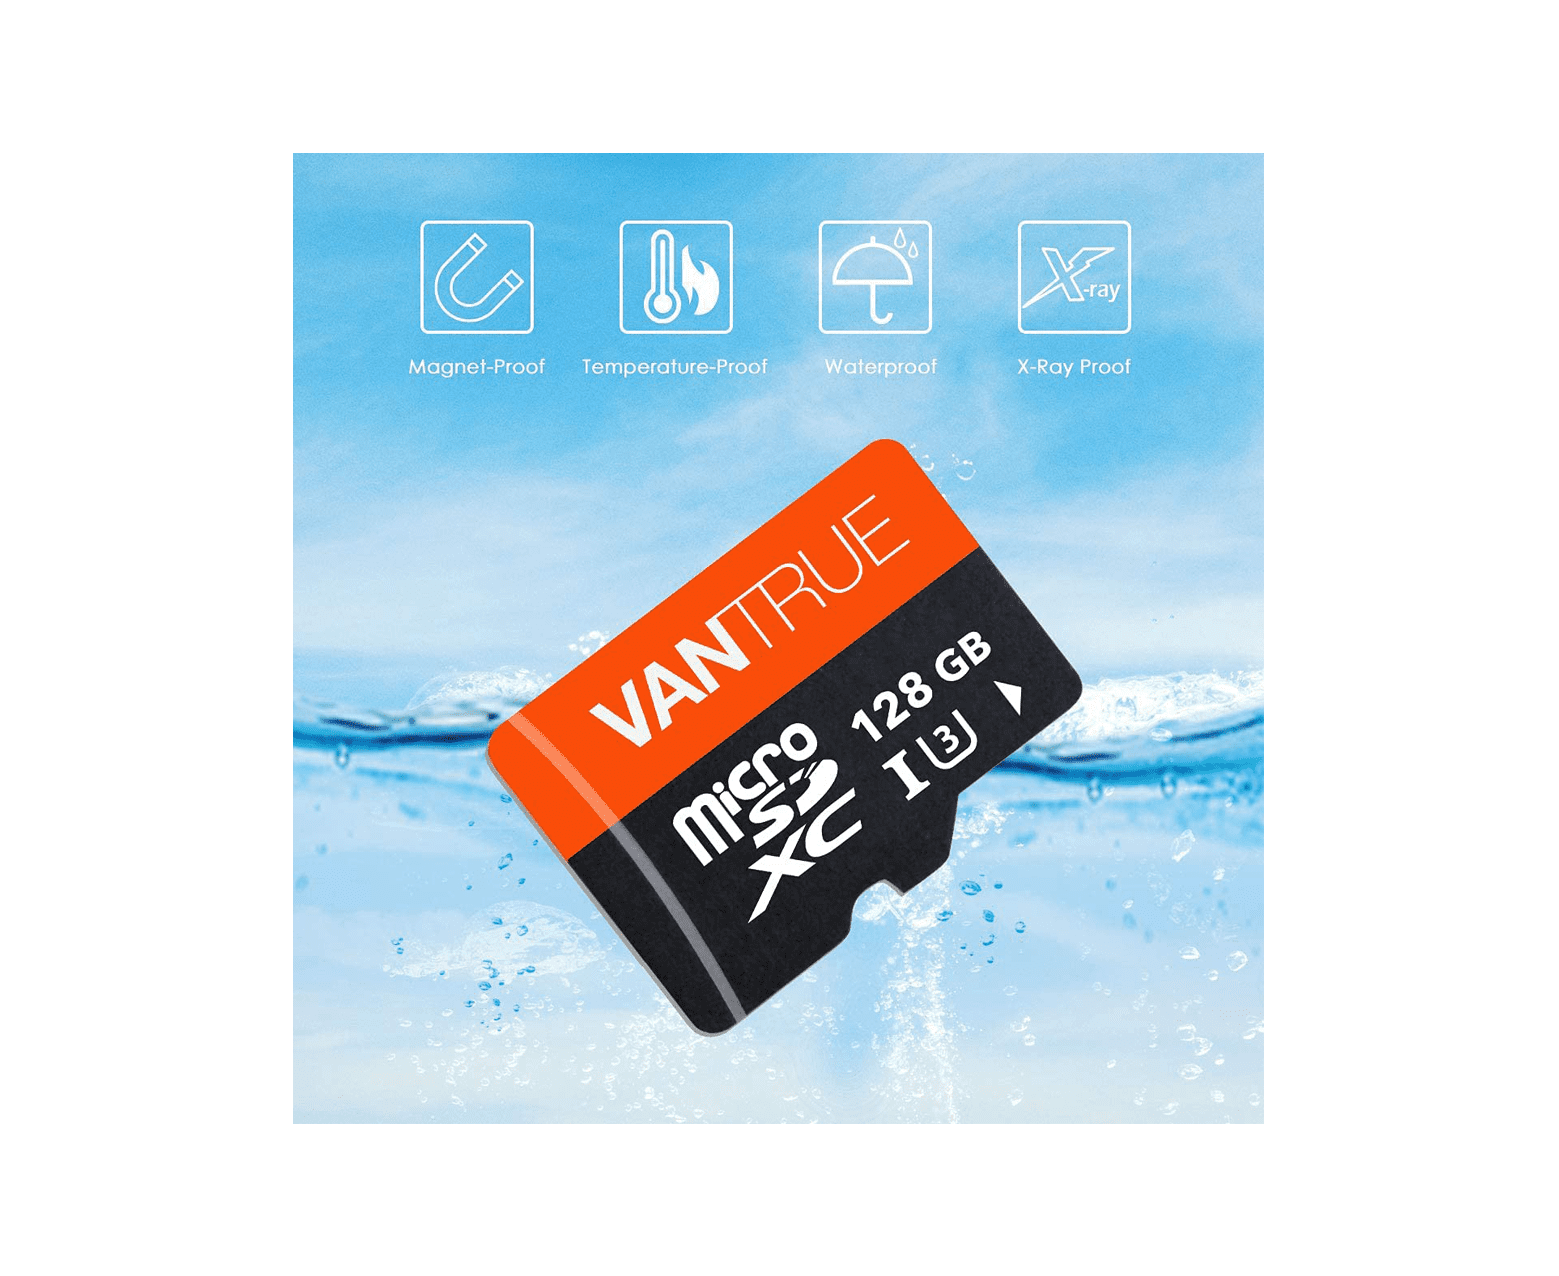 Vantrue 128 GB SD-Karte